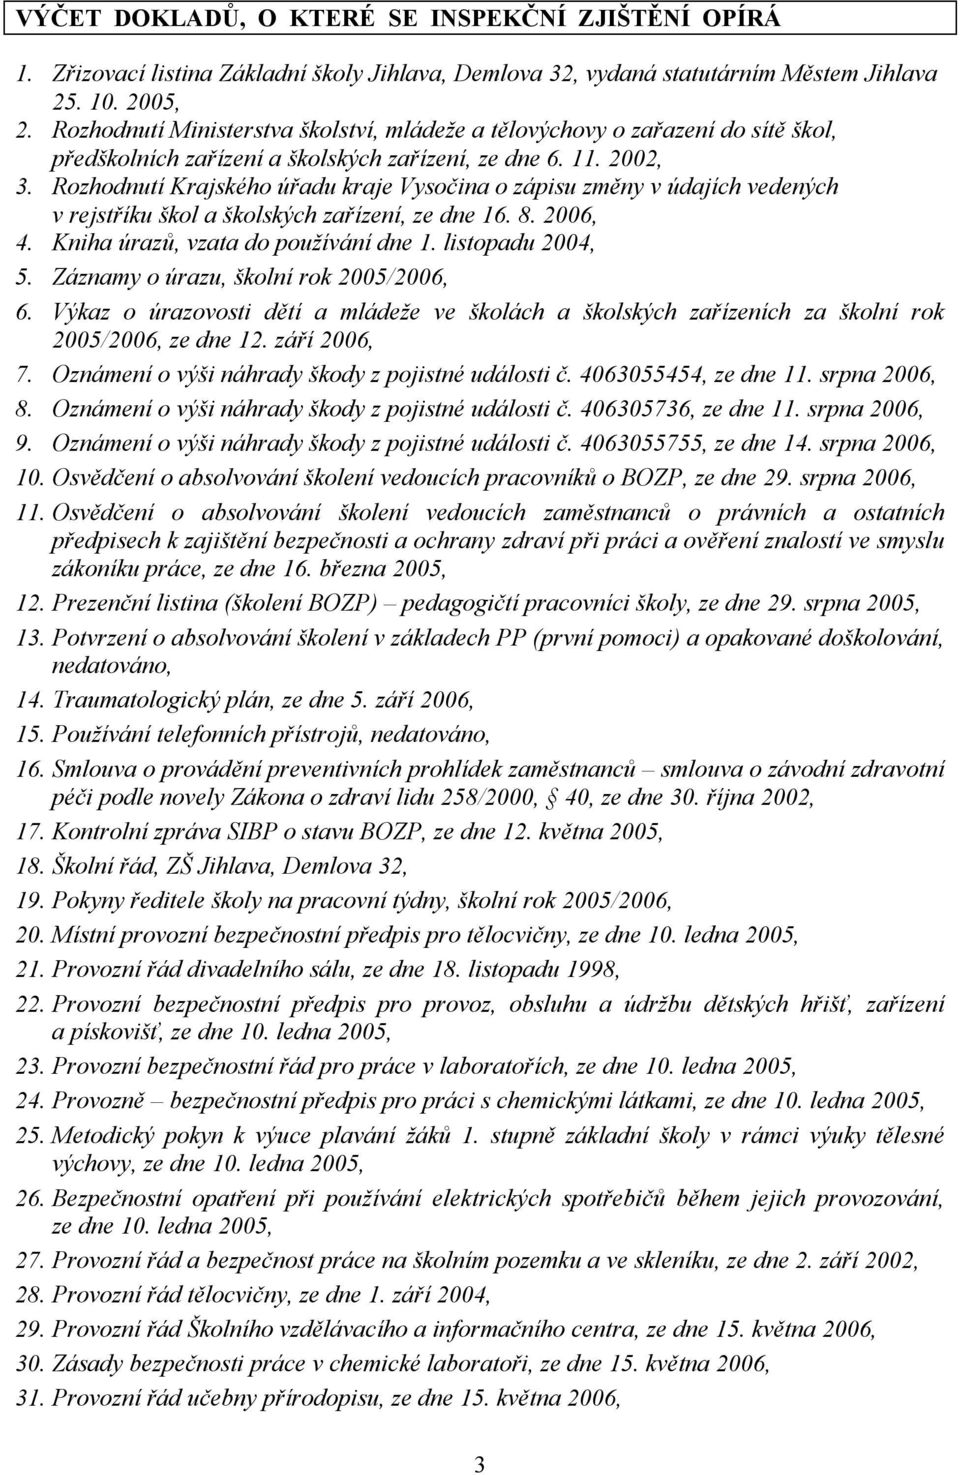 Rozhodnutí Krajského úřadu kraje Vysočina o zápisu změny v údajích vedených v rejstříku škol a školských zařízení, ze dne 16. 8. 2006, 4. Kniha úrazů, vzata do používání dne 1. listopadu 2004, 5.